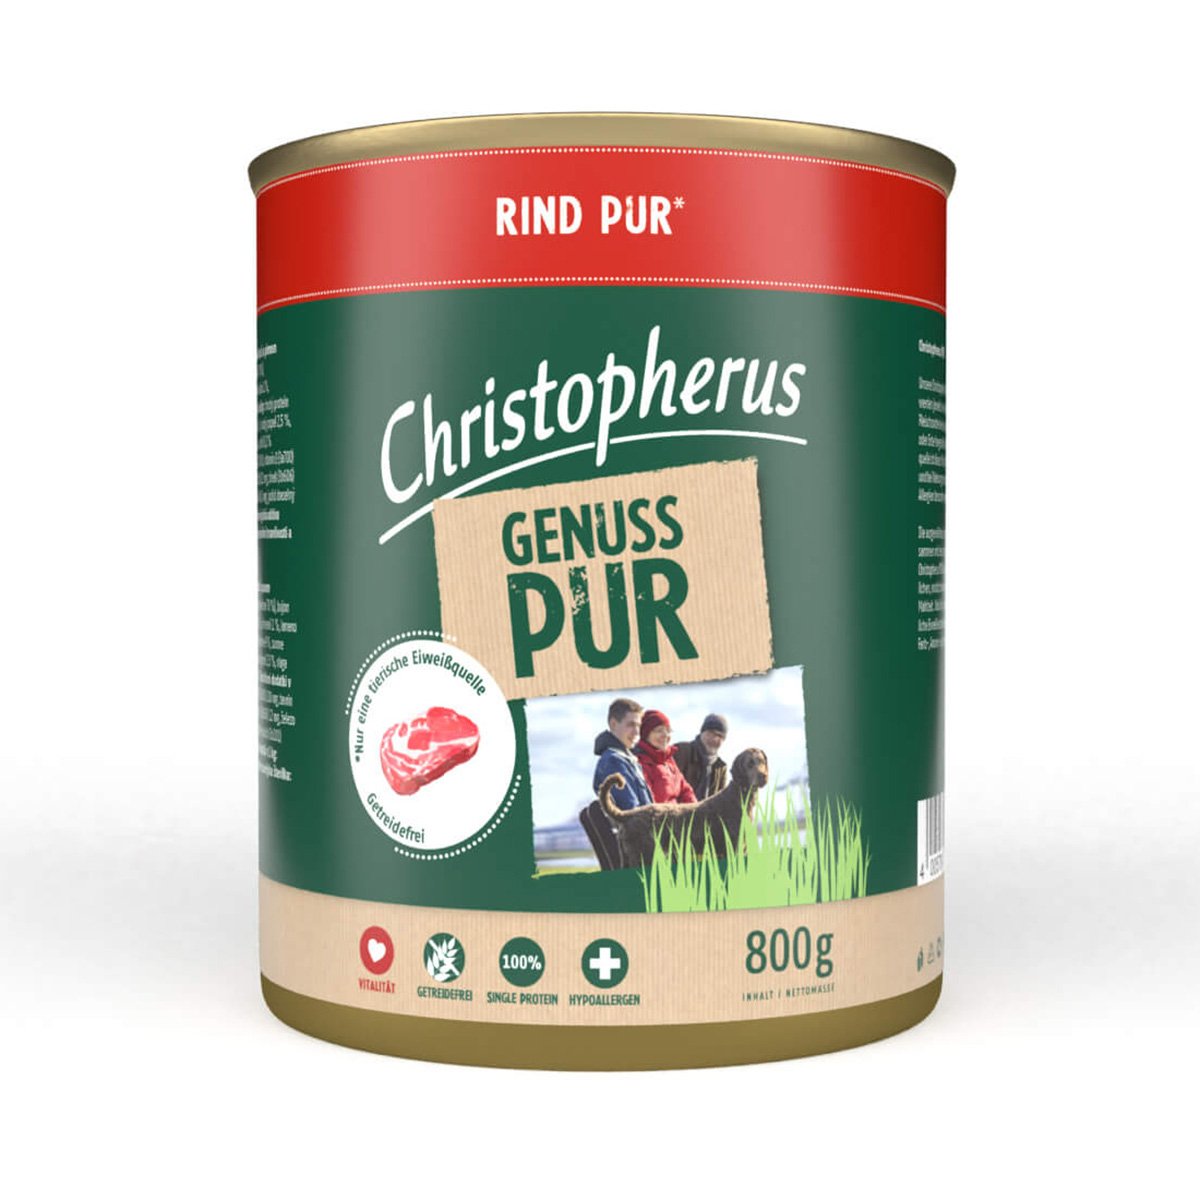 Christopherus Pur – Rind 6x800g von Christopherus